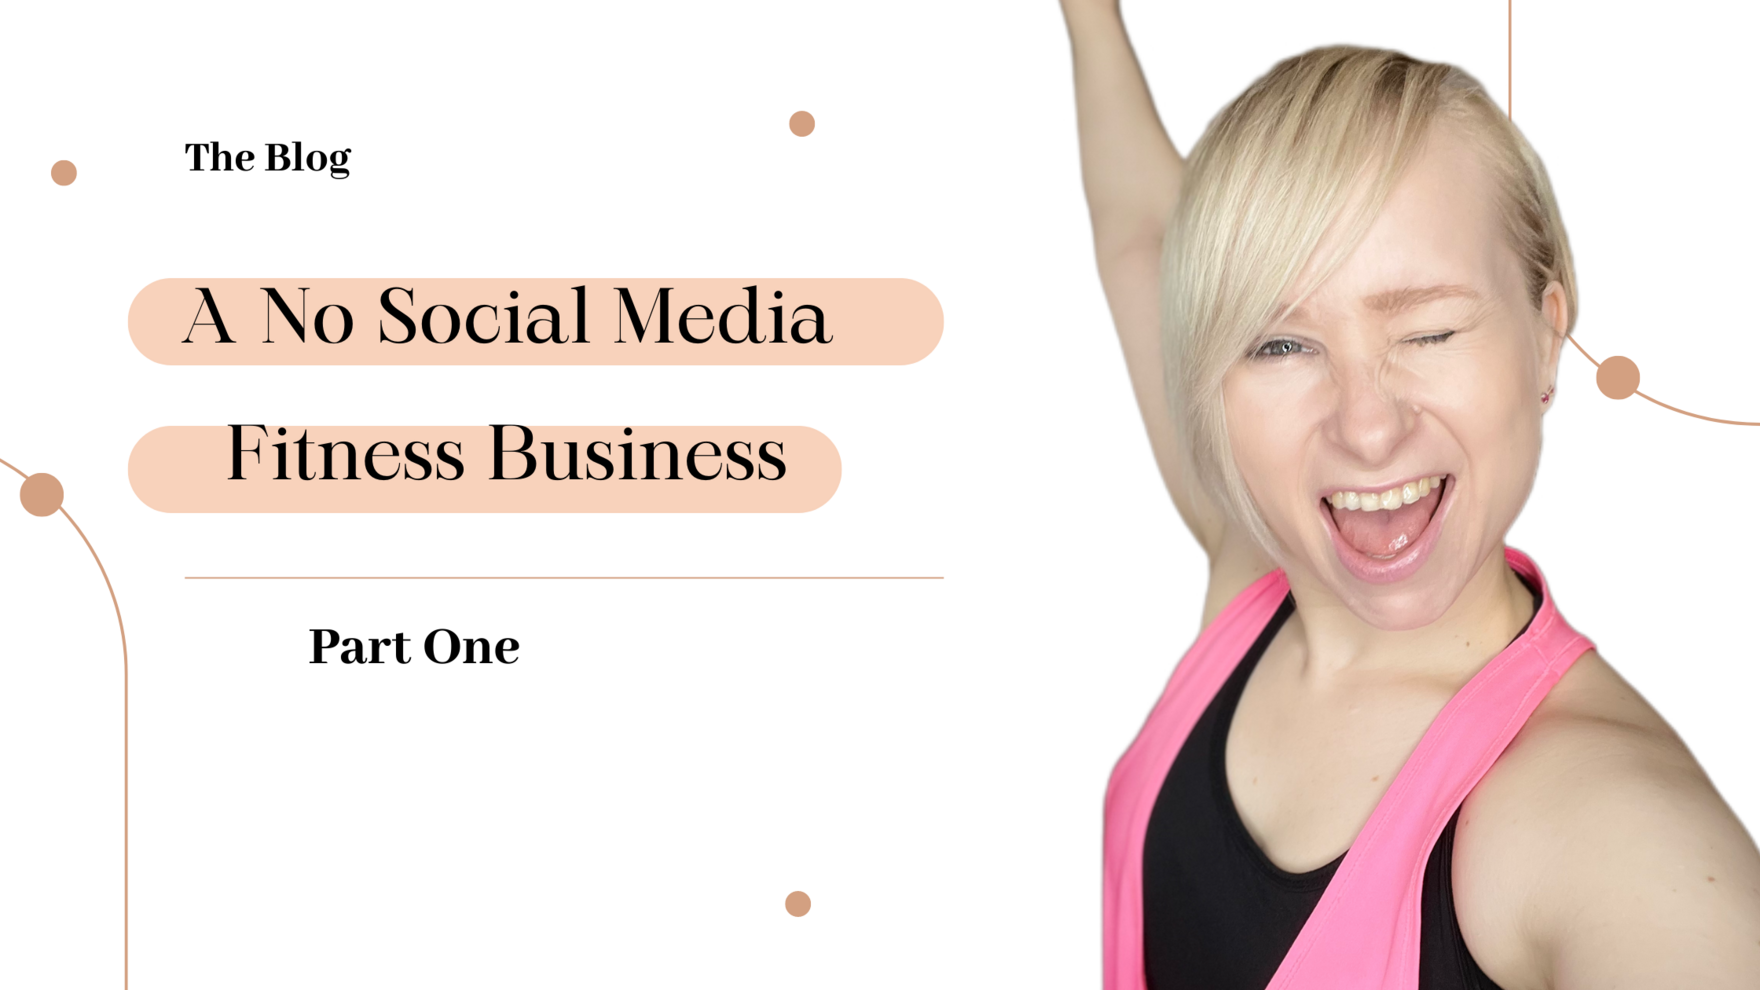 A No Social Media Fitness Business